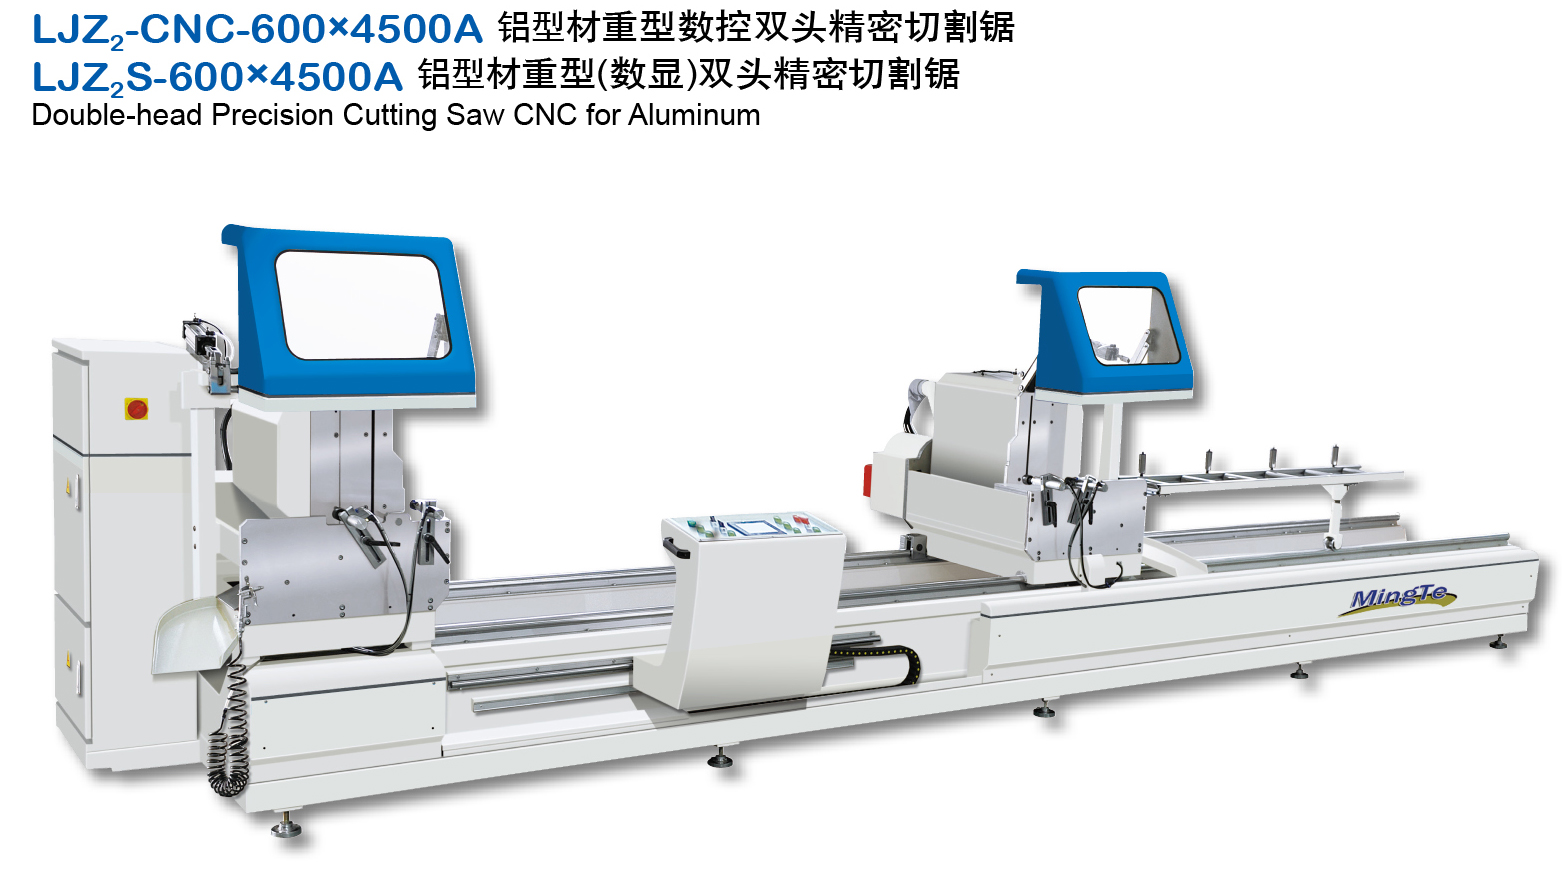 LJZ2-CNC-600×4500A 铝型材重型数控双头精